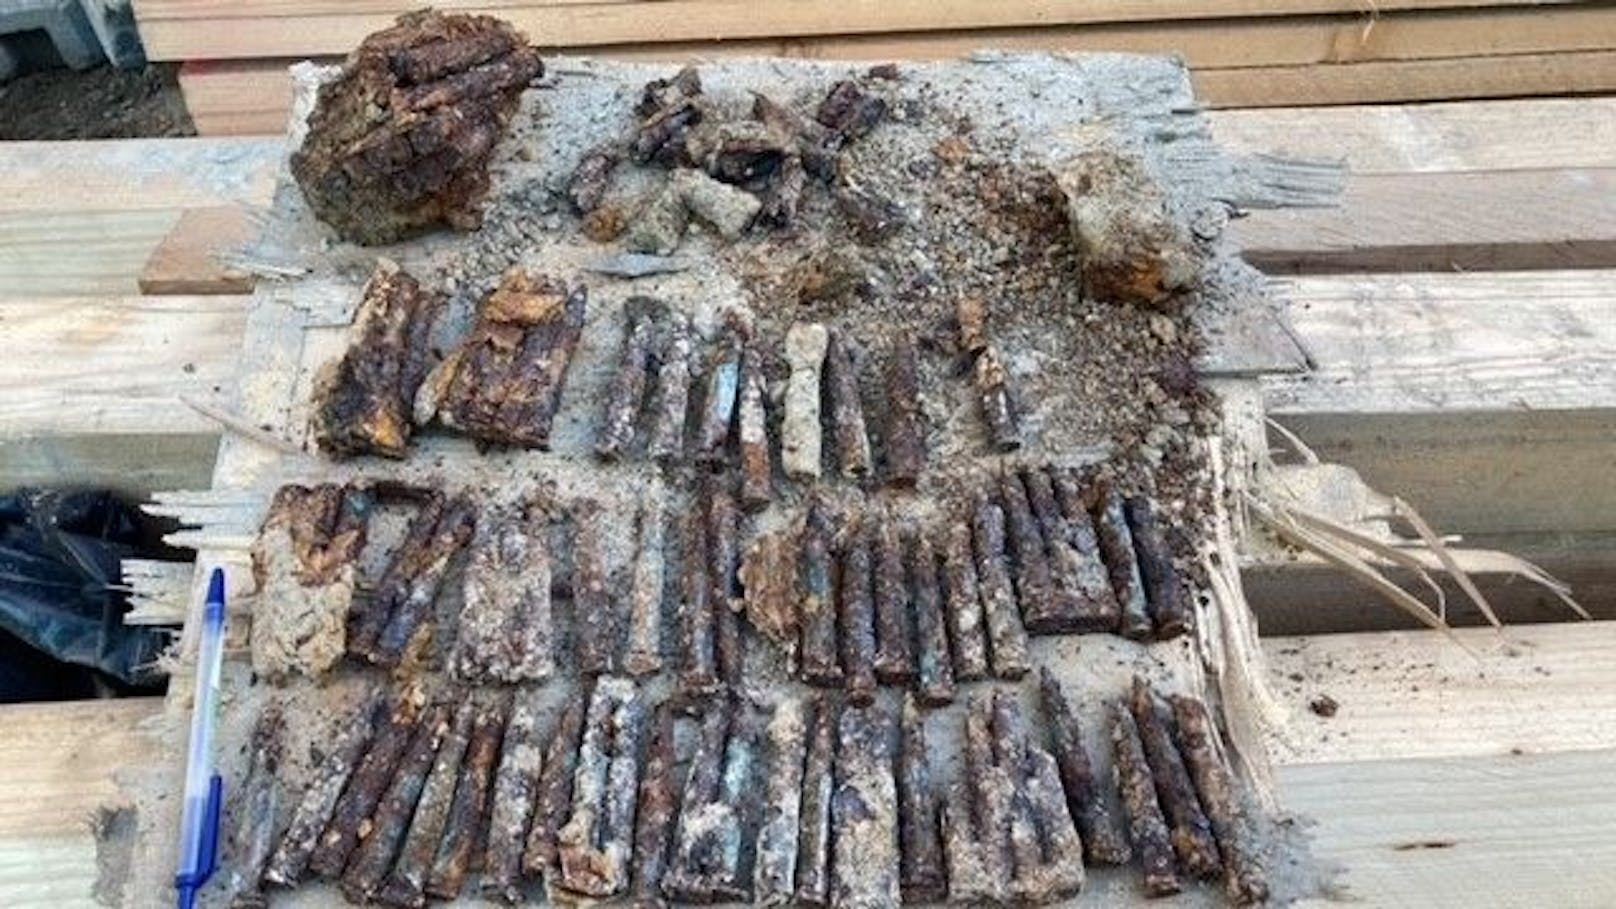 Explosiv – Weltkriegsmunition auf Baustelle gefunden